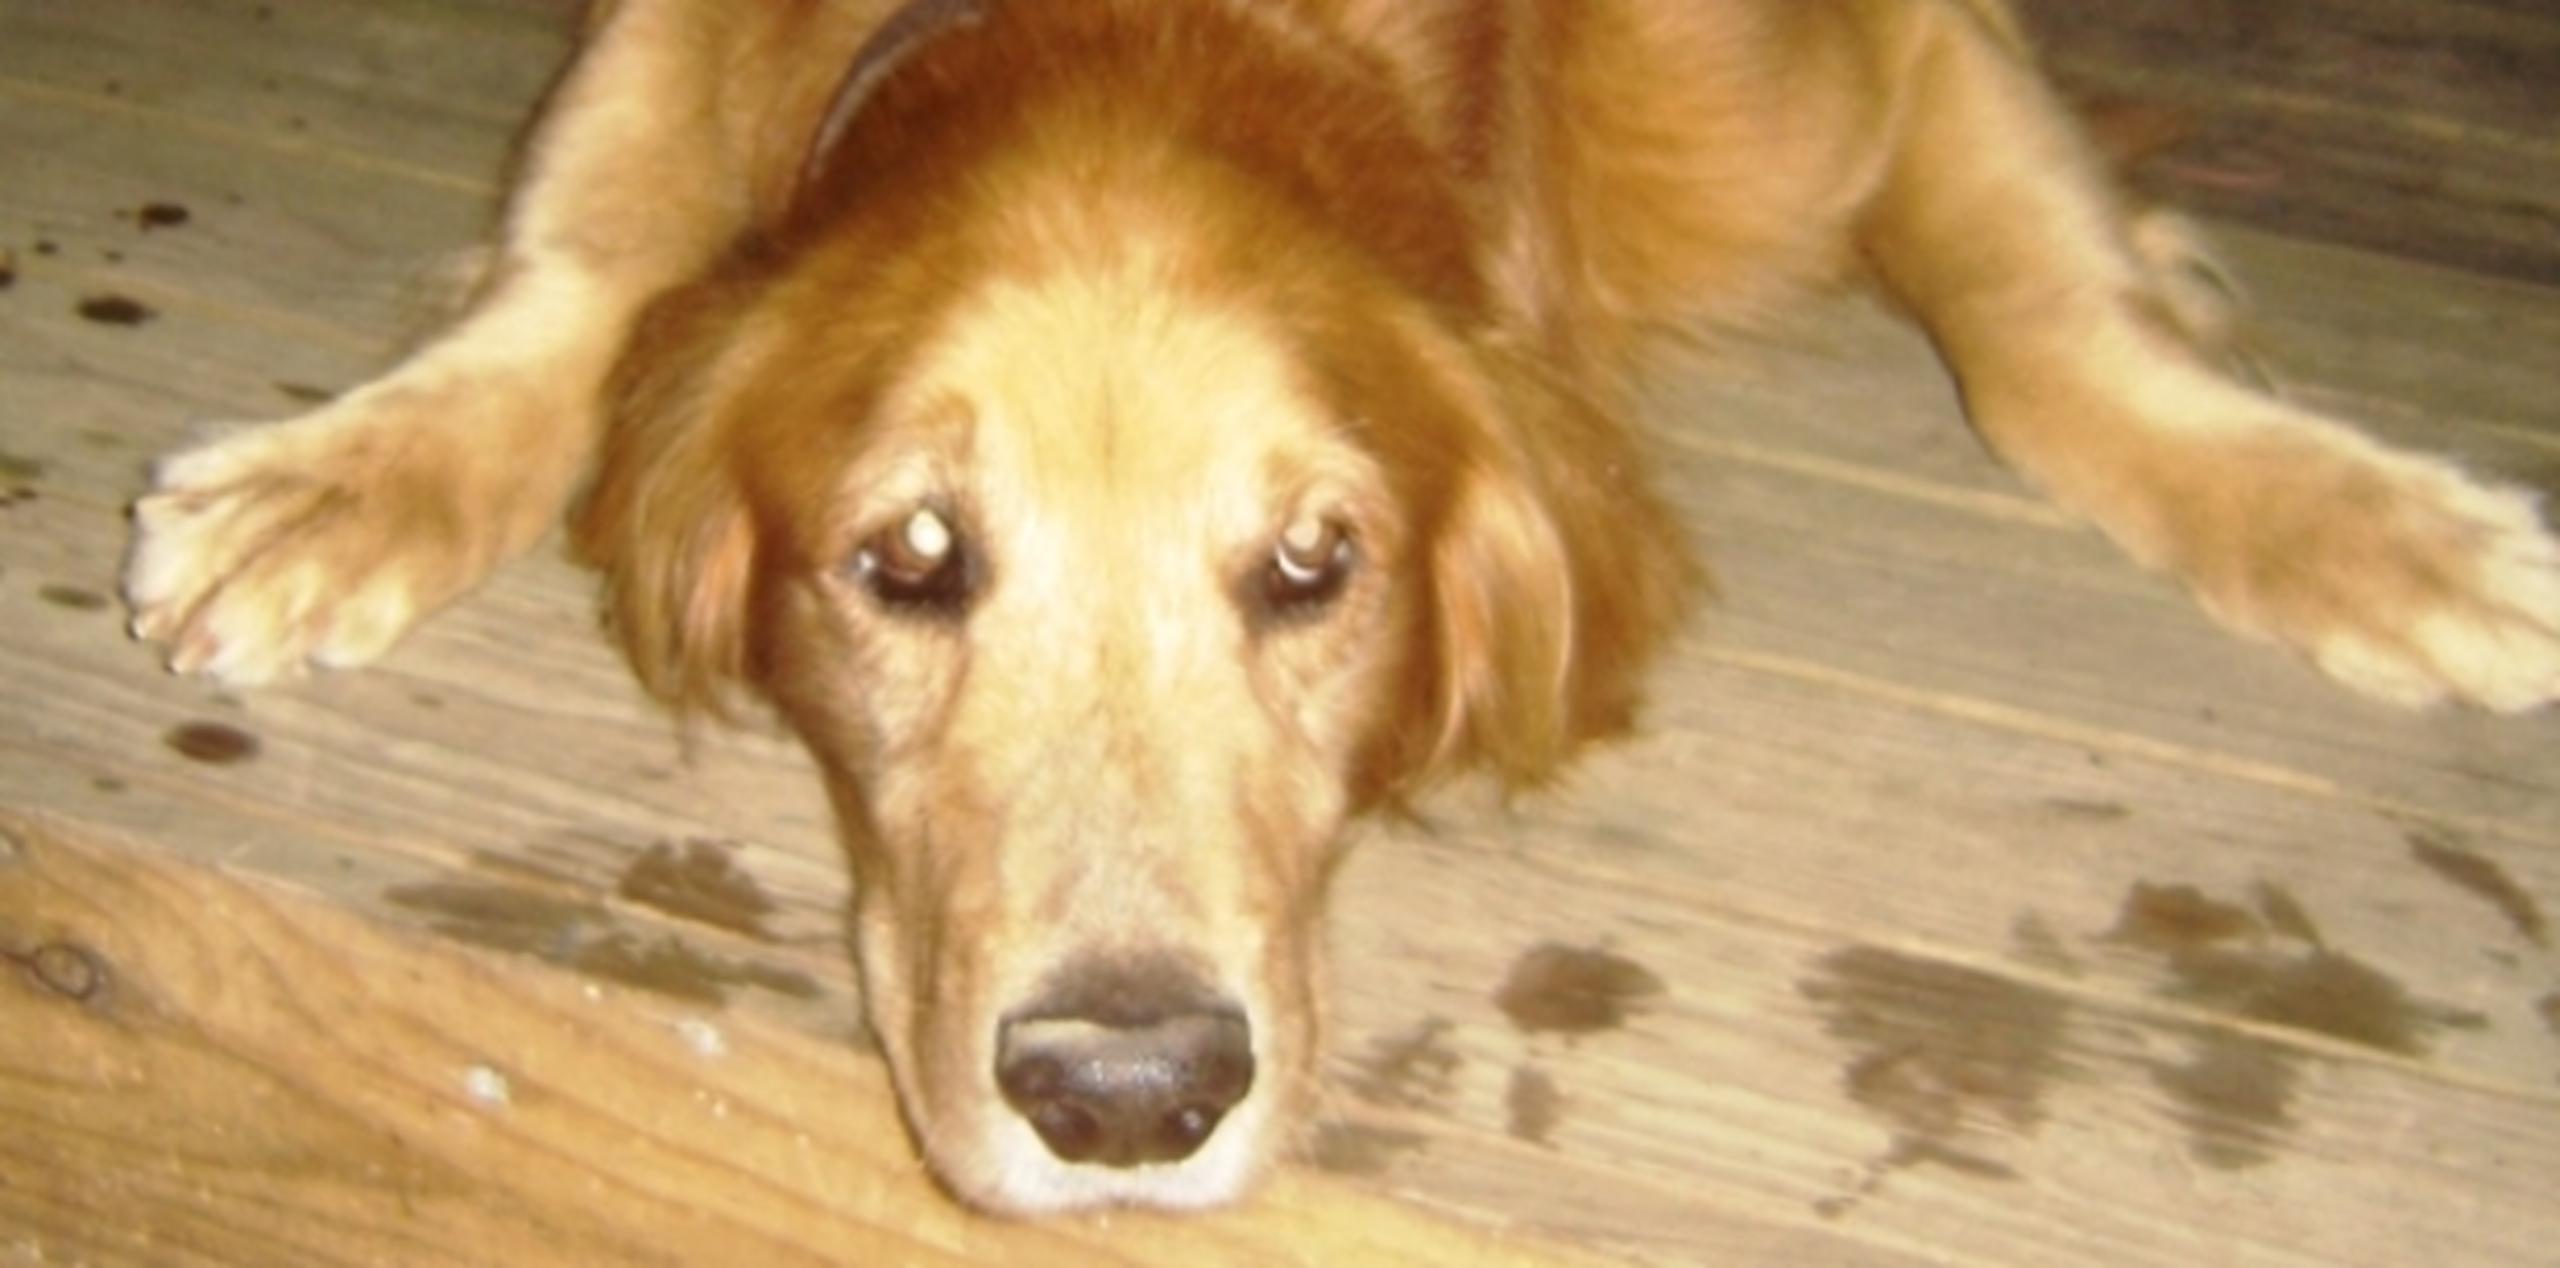 Uno de los perros hurtados era un golden retriever. (Archivo)